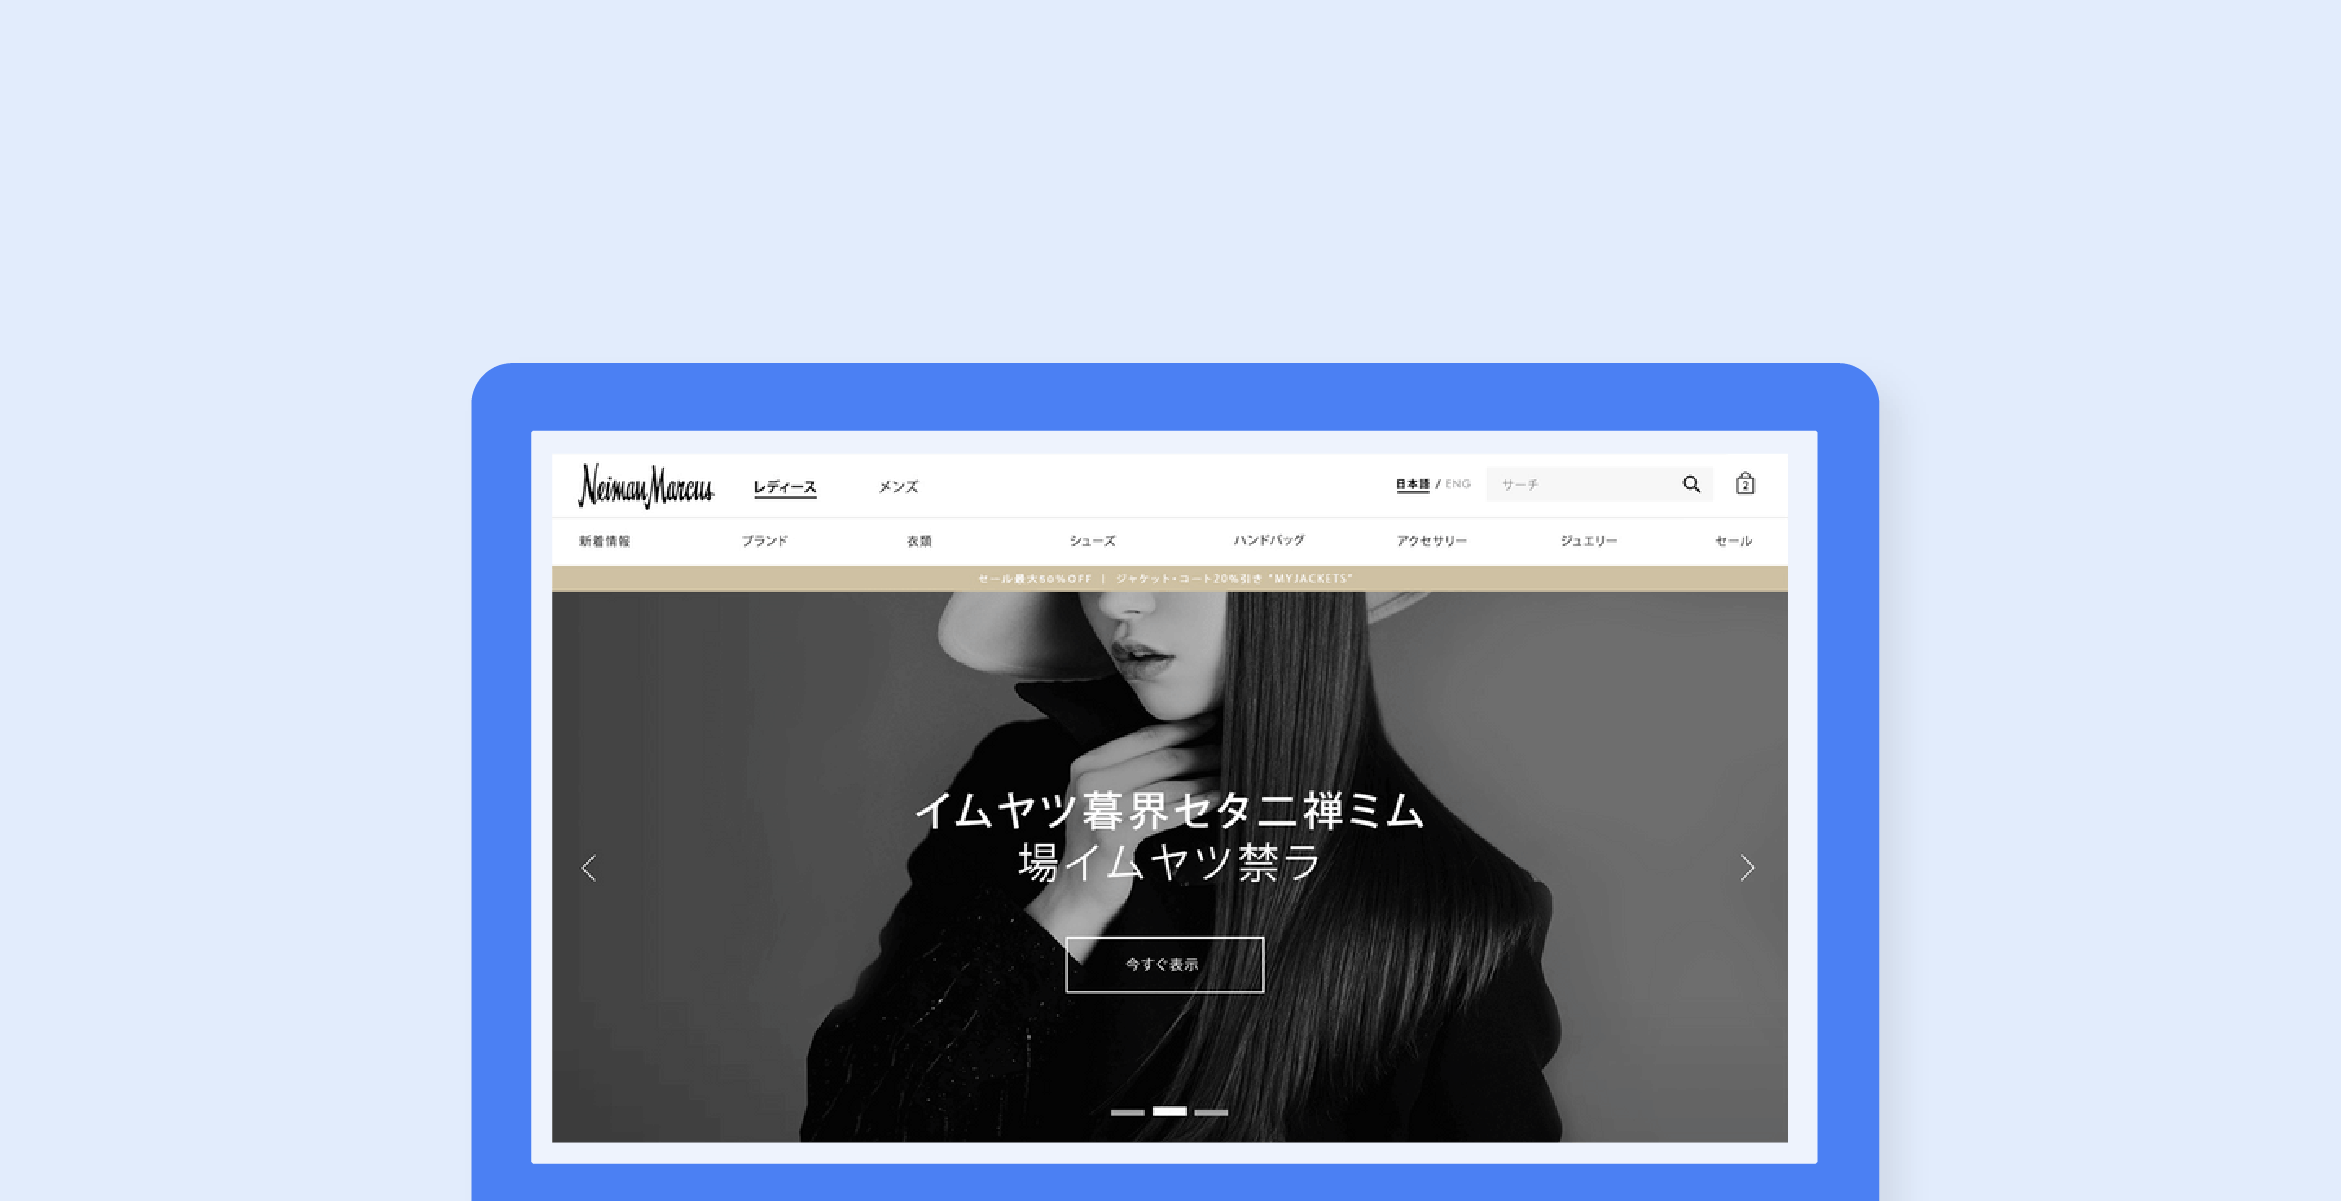 Neeman Marcus Website in Japanese 